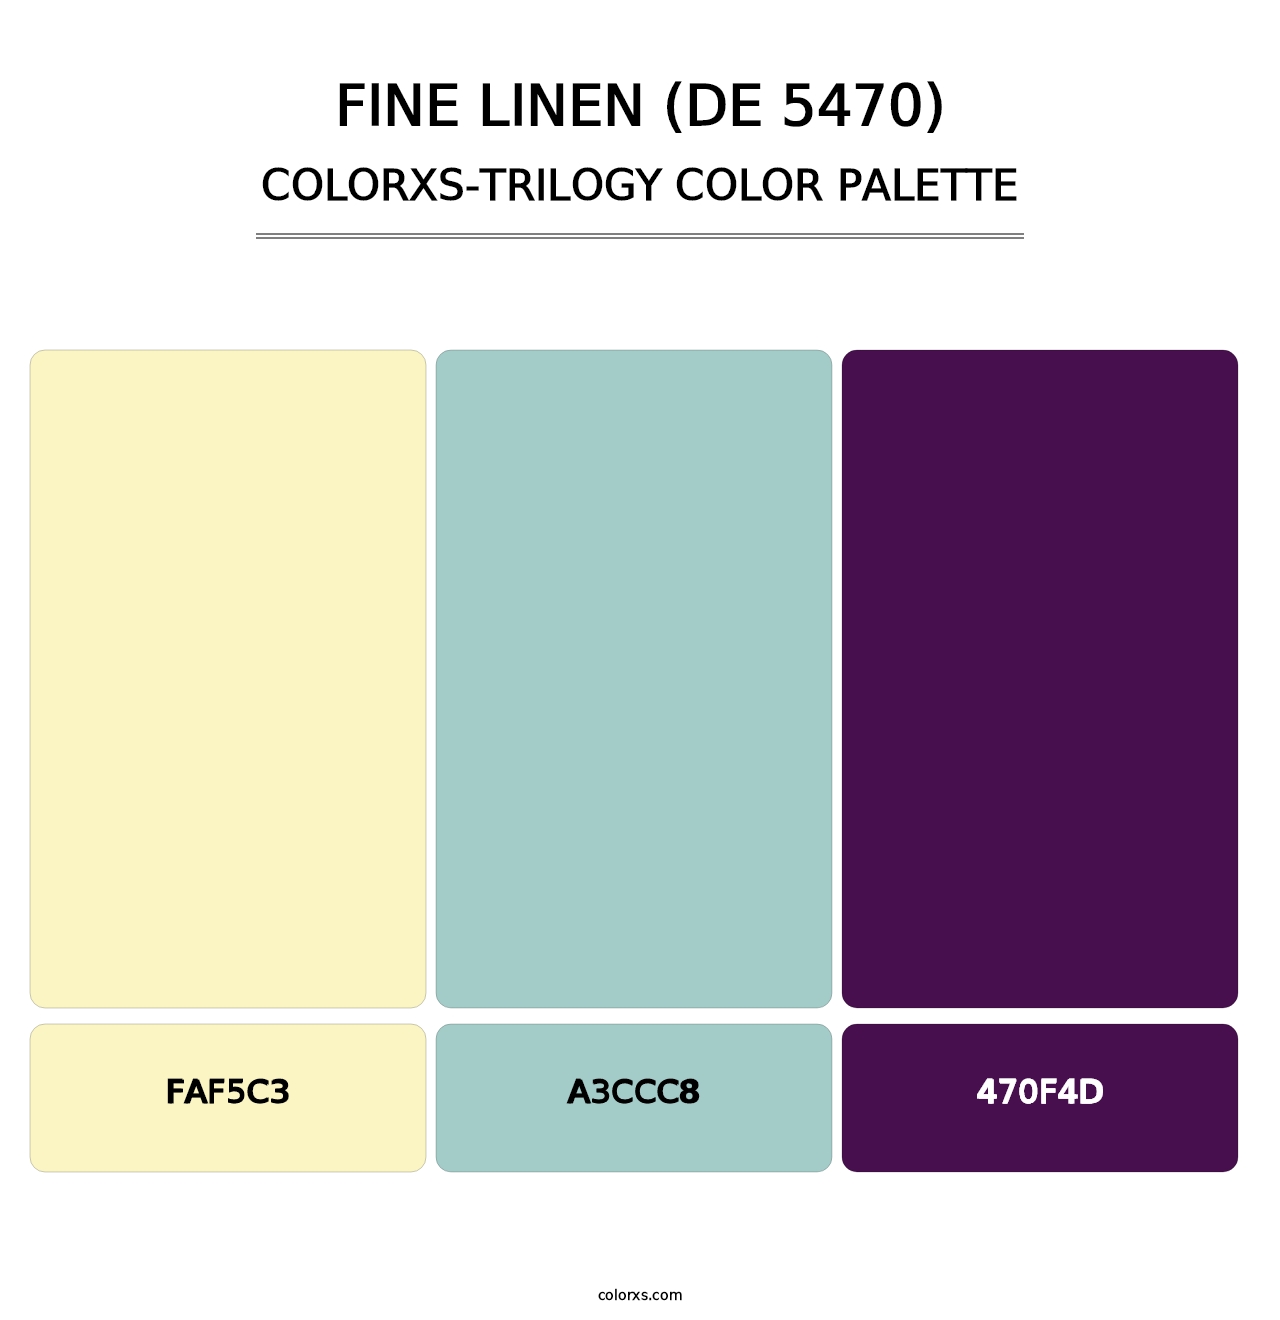 Fine Linen (DE 5470) - Colorxs Trilogy Palette